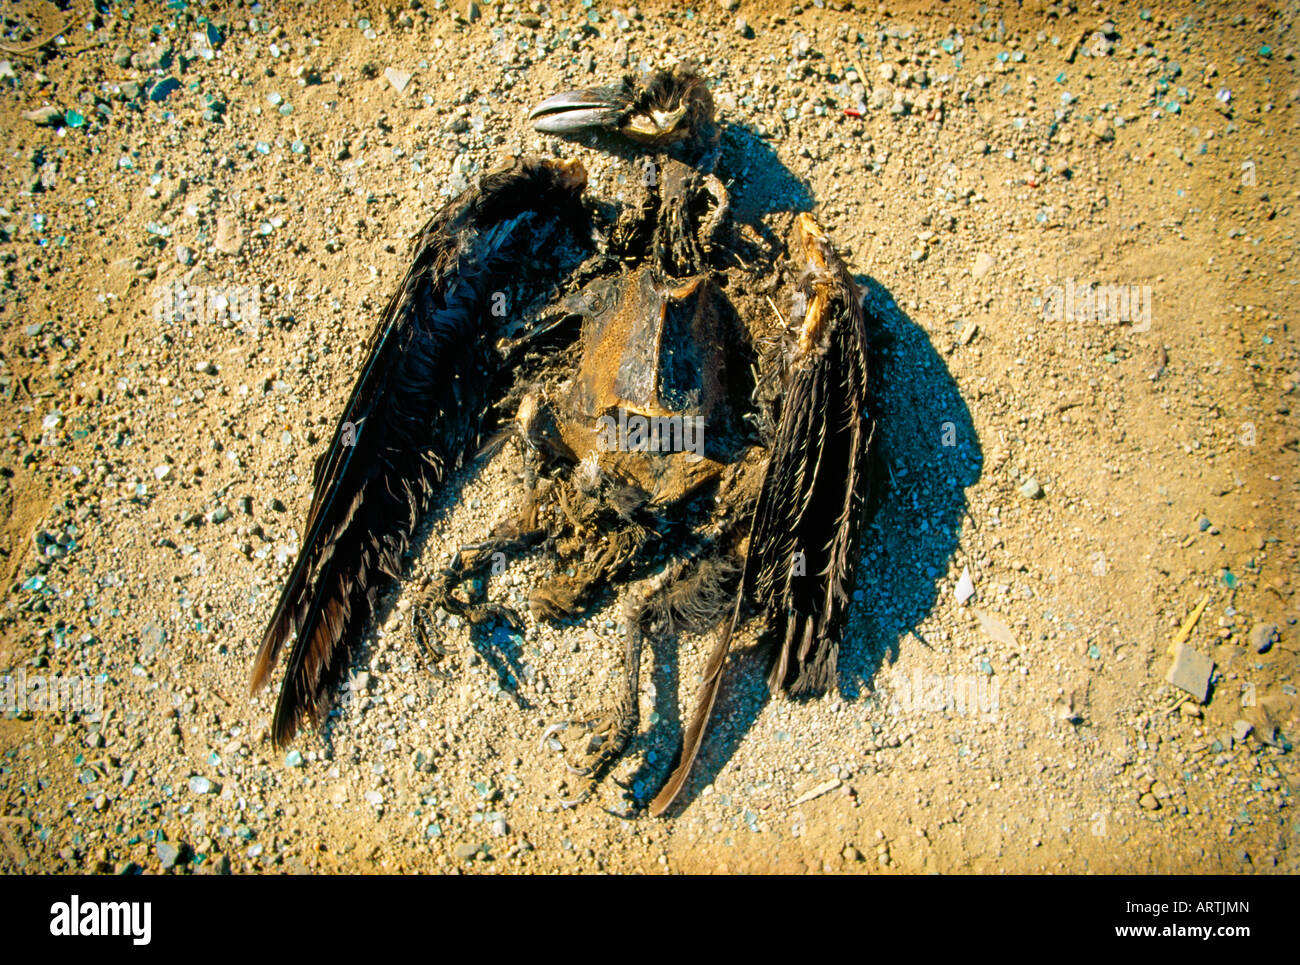 Decaying bird carcass Stock Photo